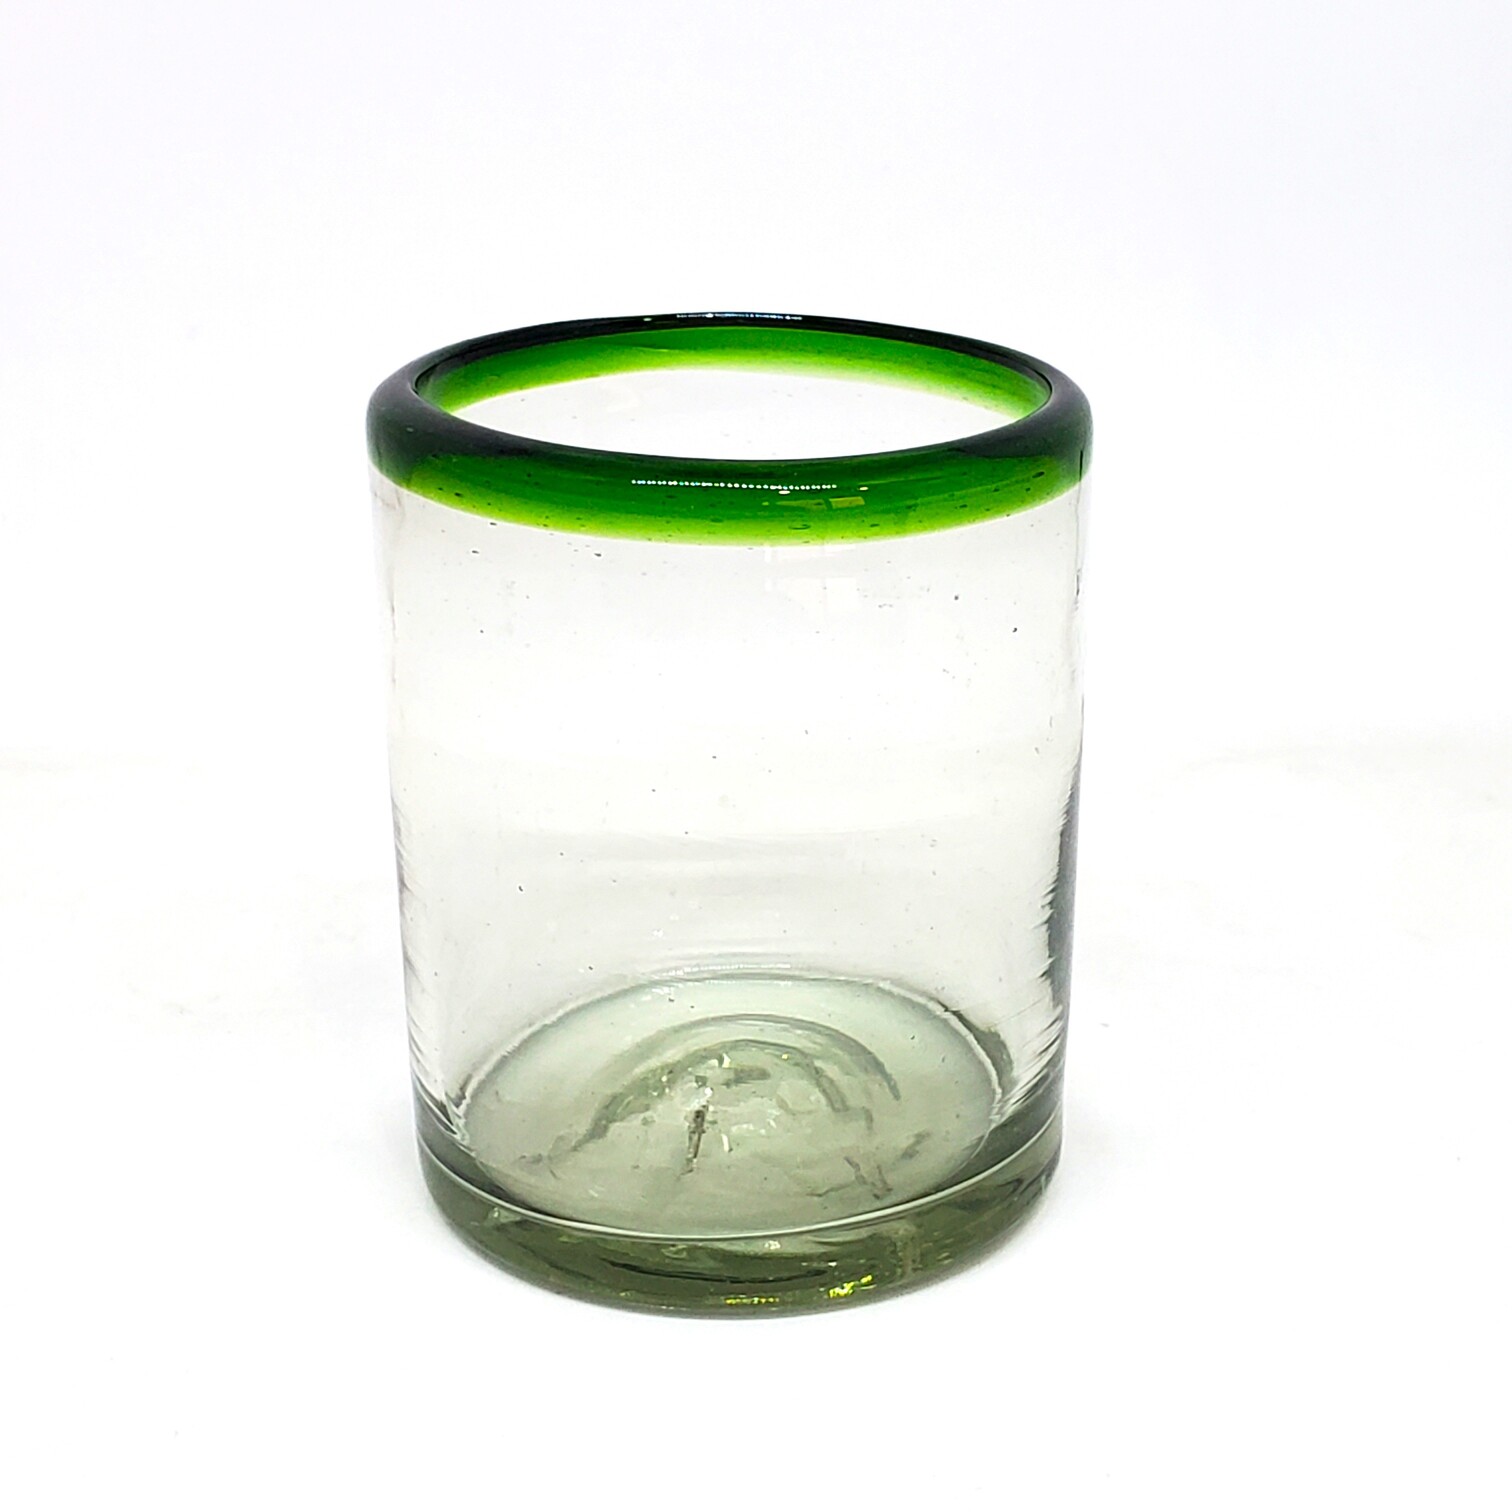 VIDRIO SOPLADO / Juego de 6 vasos chicos con borde verde esmeralda, 10 oz, Vidrio Reciclado, Libre de Plomo y Toxinas